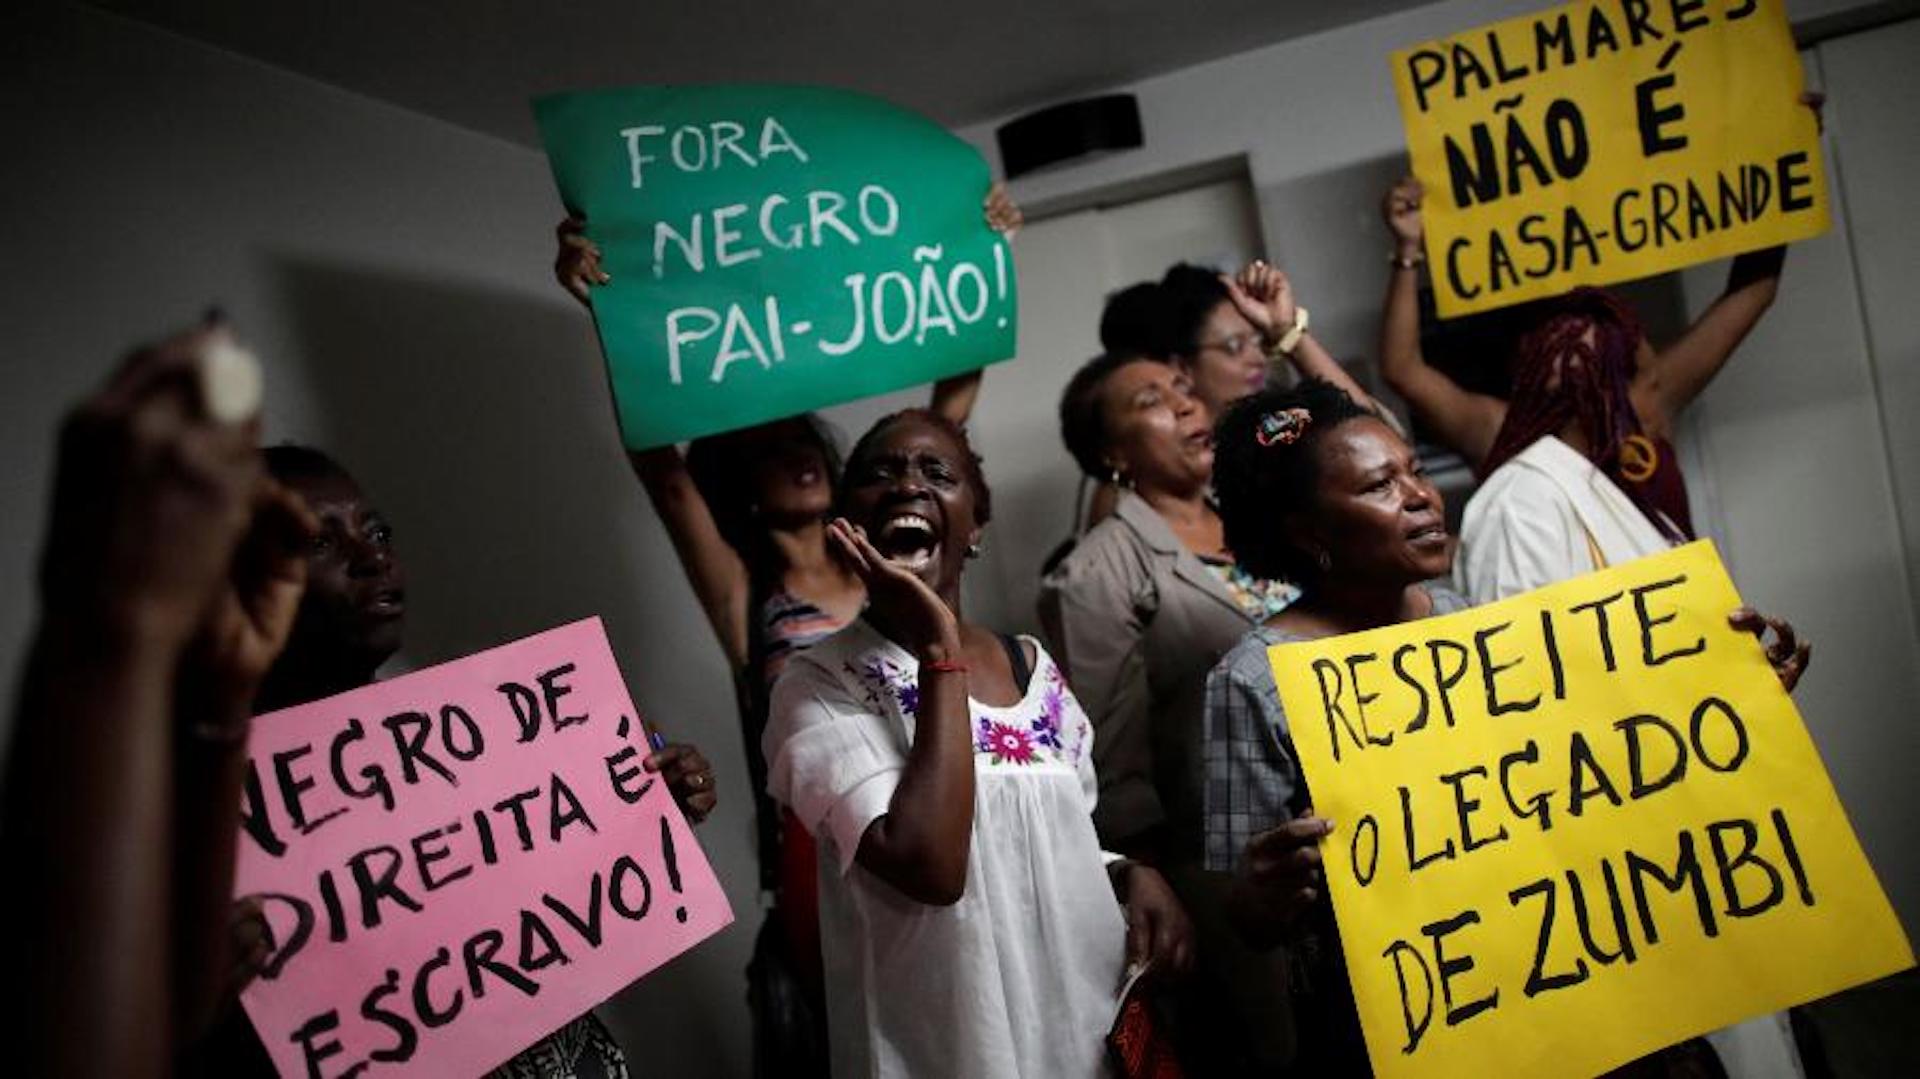 Brazil,Protesters stormed Fundação Palmares protesting against nomination of Sergio Camargo.